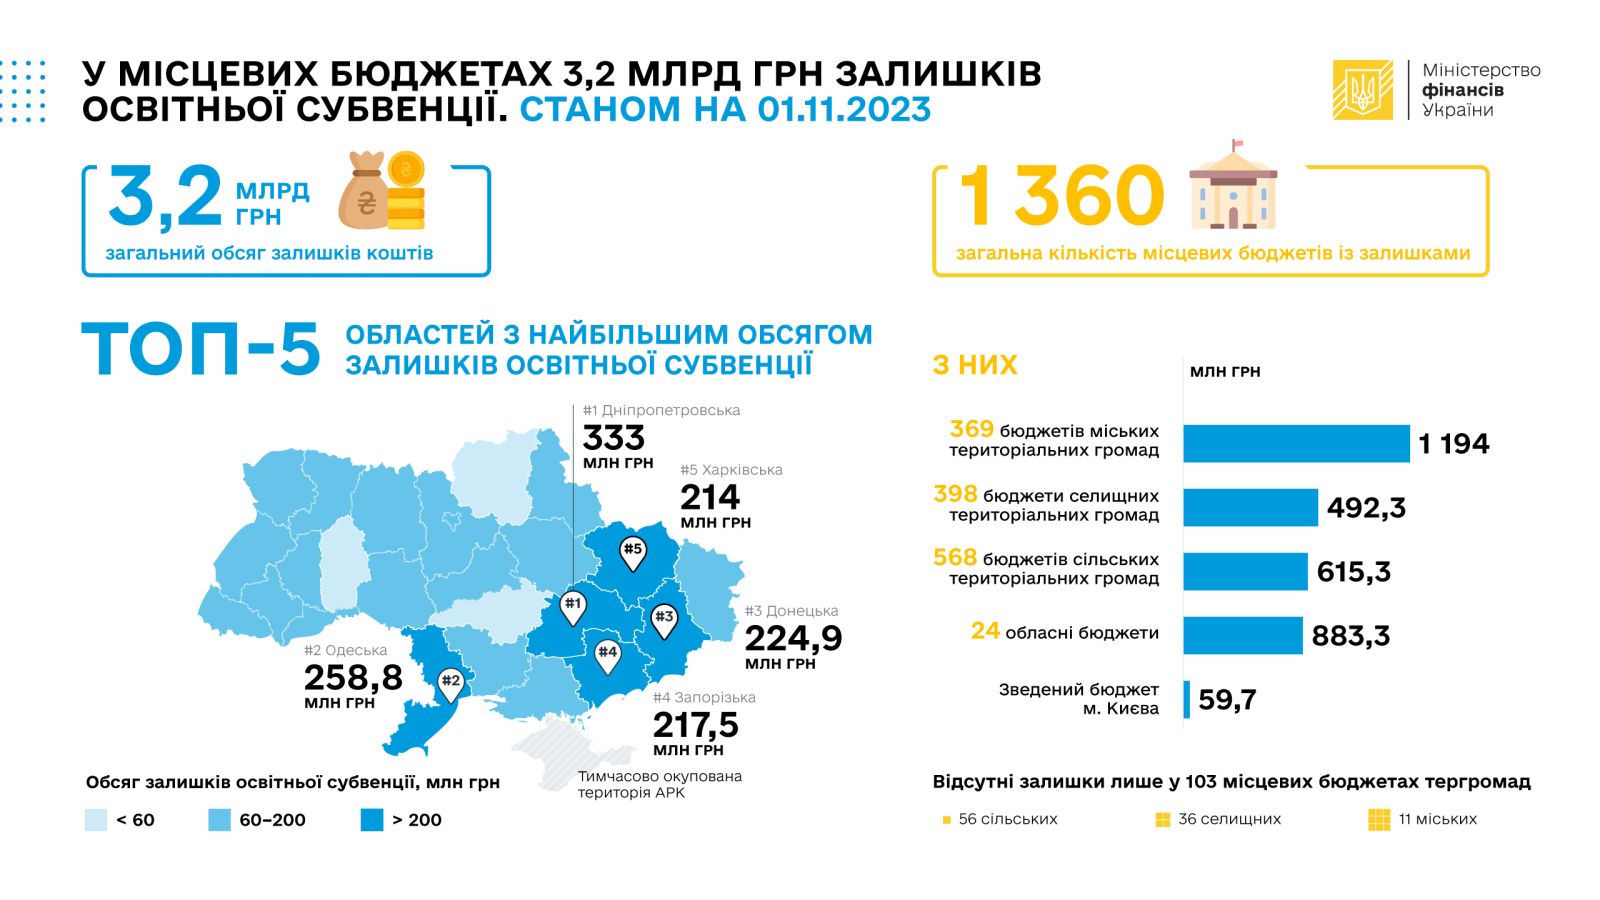 Накопление образовательной субвенции в местных бюджетах Украины. Инфографика: Минфин